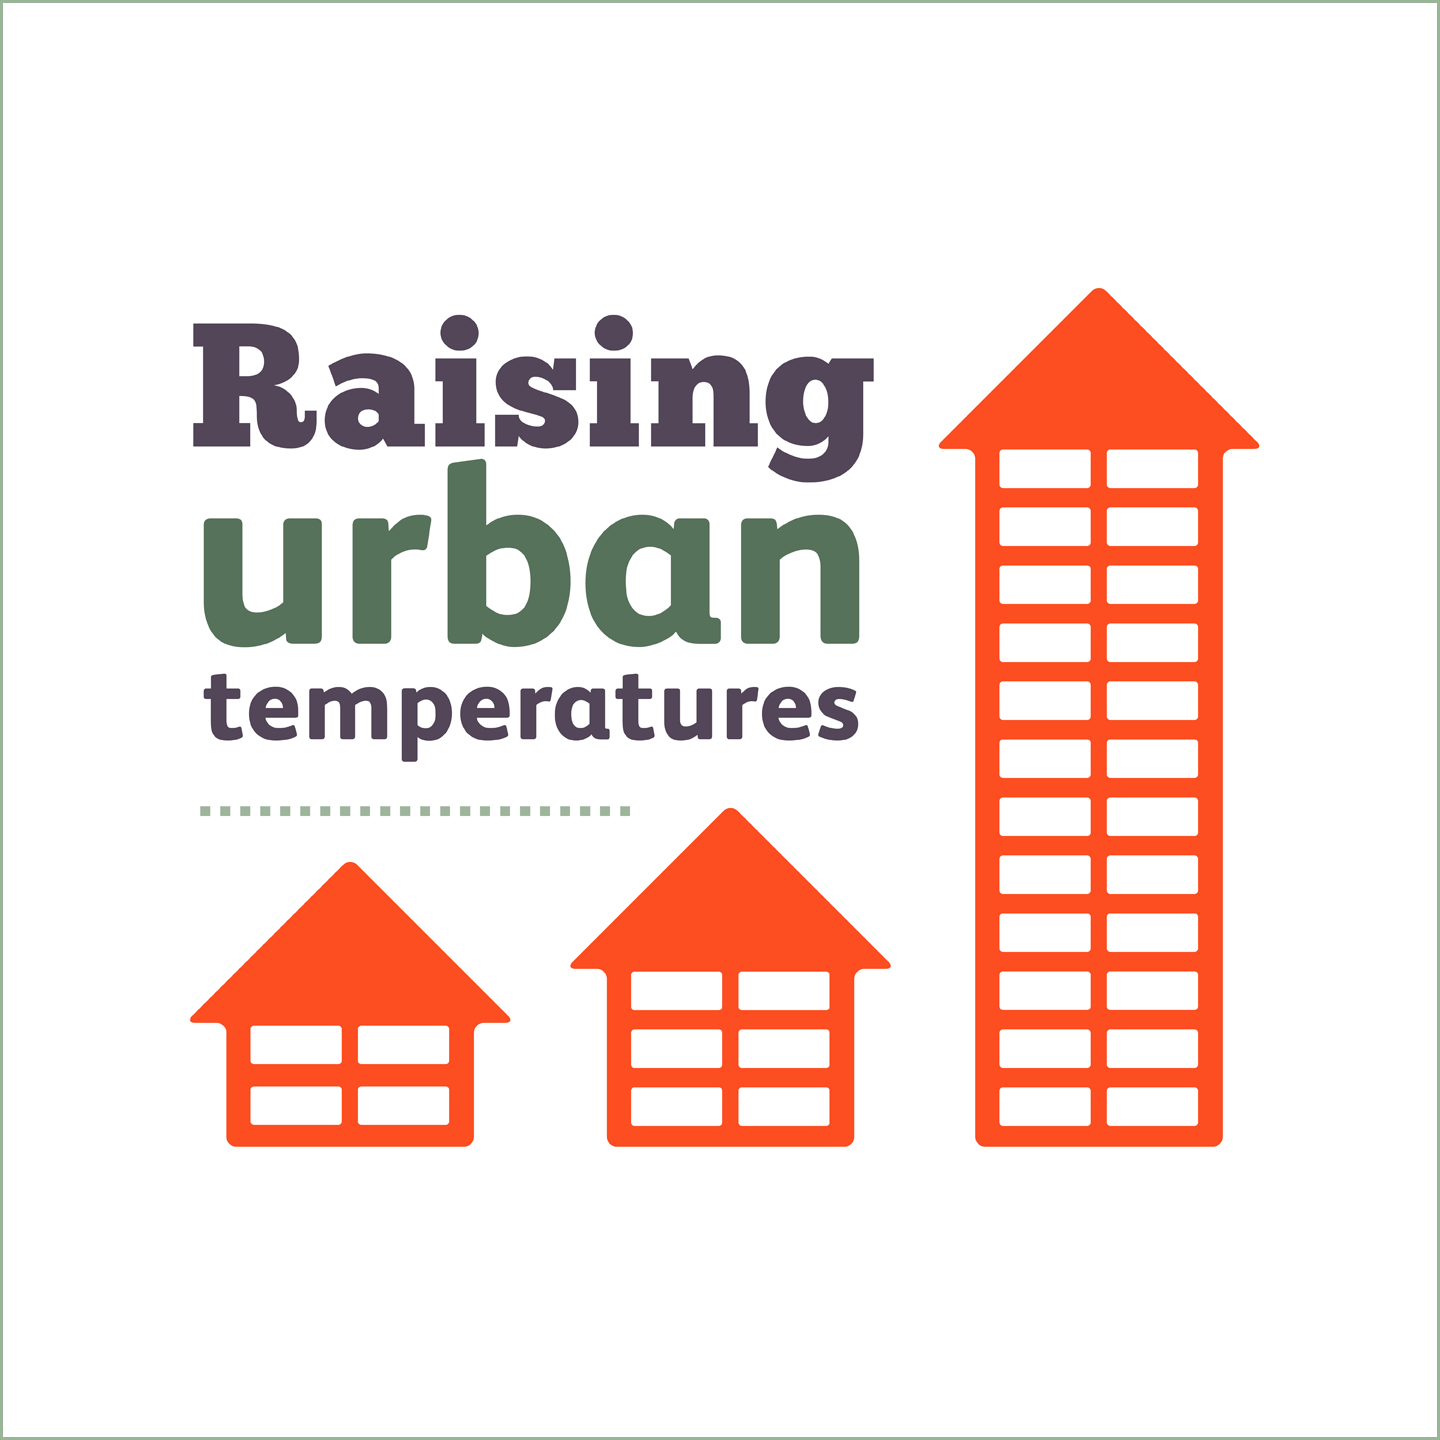 Raising urban temperatures